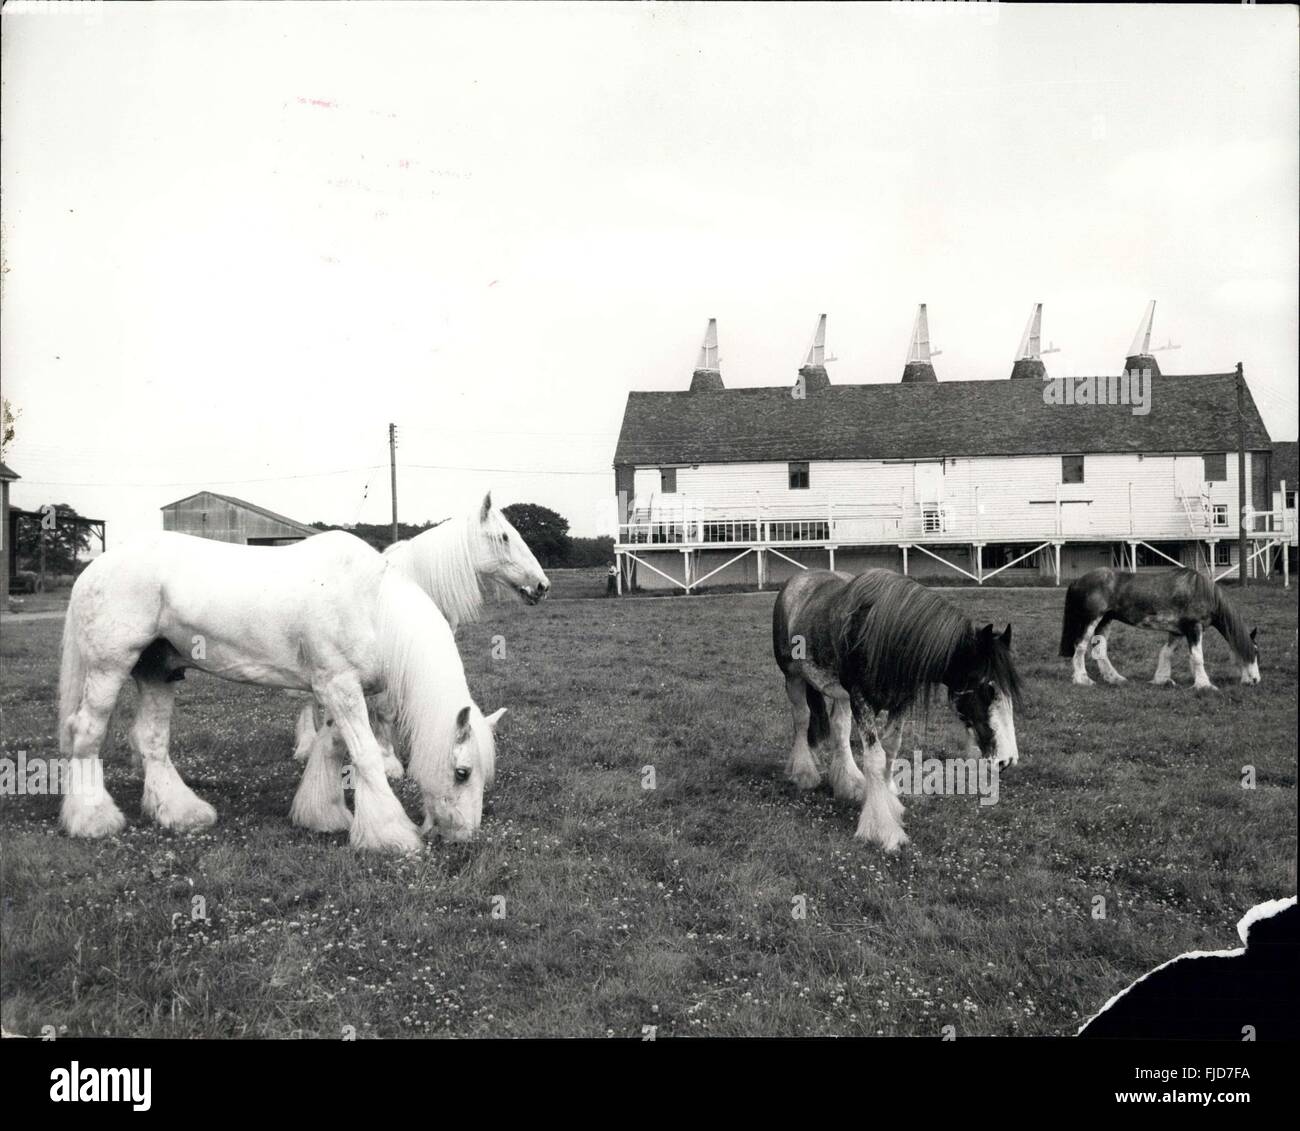 1968 - Les Jours heureux pour la liberté : Drays modifié en dernier pour les chevaux qui travaillent dur Dray pour 11 mois de l'année tirer transporter le London browary drays de tirer l'Éternel du maire car, comme ils ont commencé un mois de vacances à la ferme dans le Kent tableau blanc hier. La photo montre une partie de l'bbread avec Shire Horse profitez d'une journée tranquille au début de leur mois de vacances à Bltring hier. © Keystone Photos USA/ZUMAPRESS.com/Alamy Live News Banque D'Images